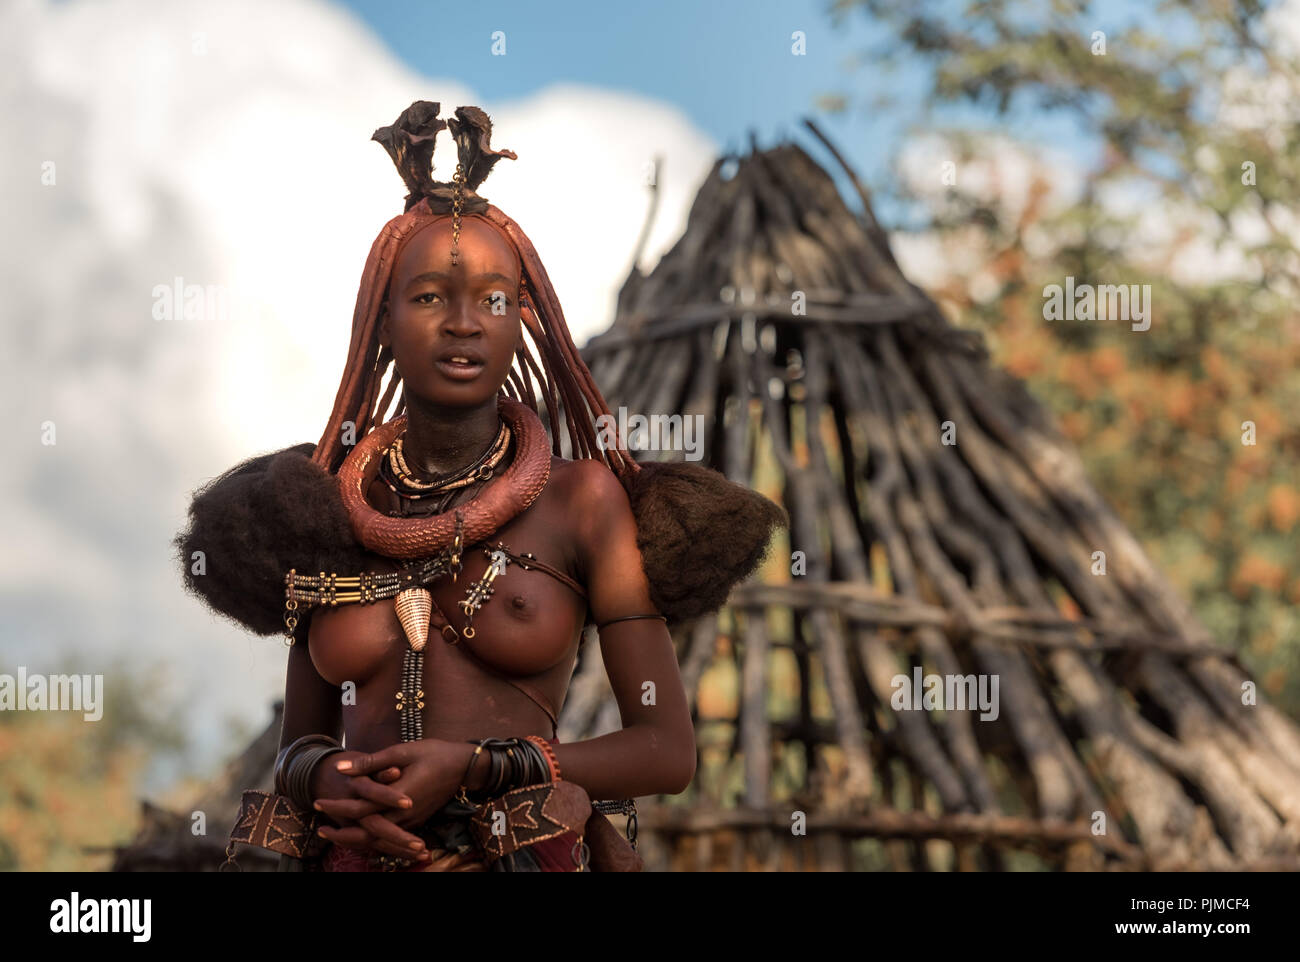 Jolie femme Himba avec de beaux bijoux de corps se trouve dans la mi-ombre dans son village Himba, à la recherche dans l'appareil photo Banque D'Images